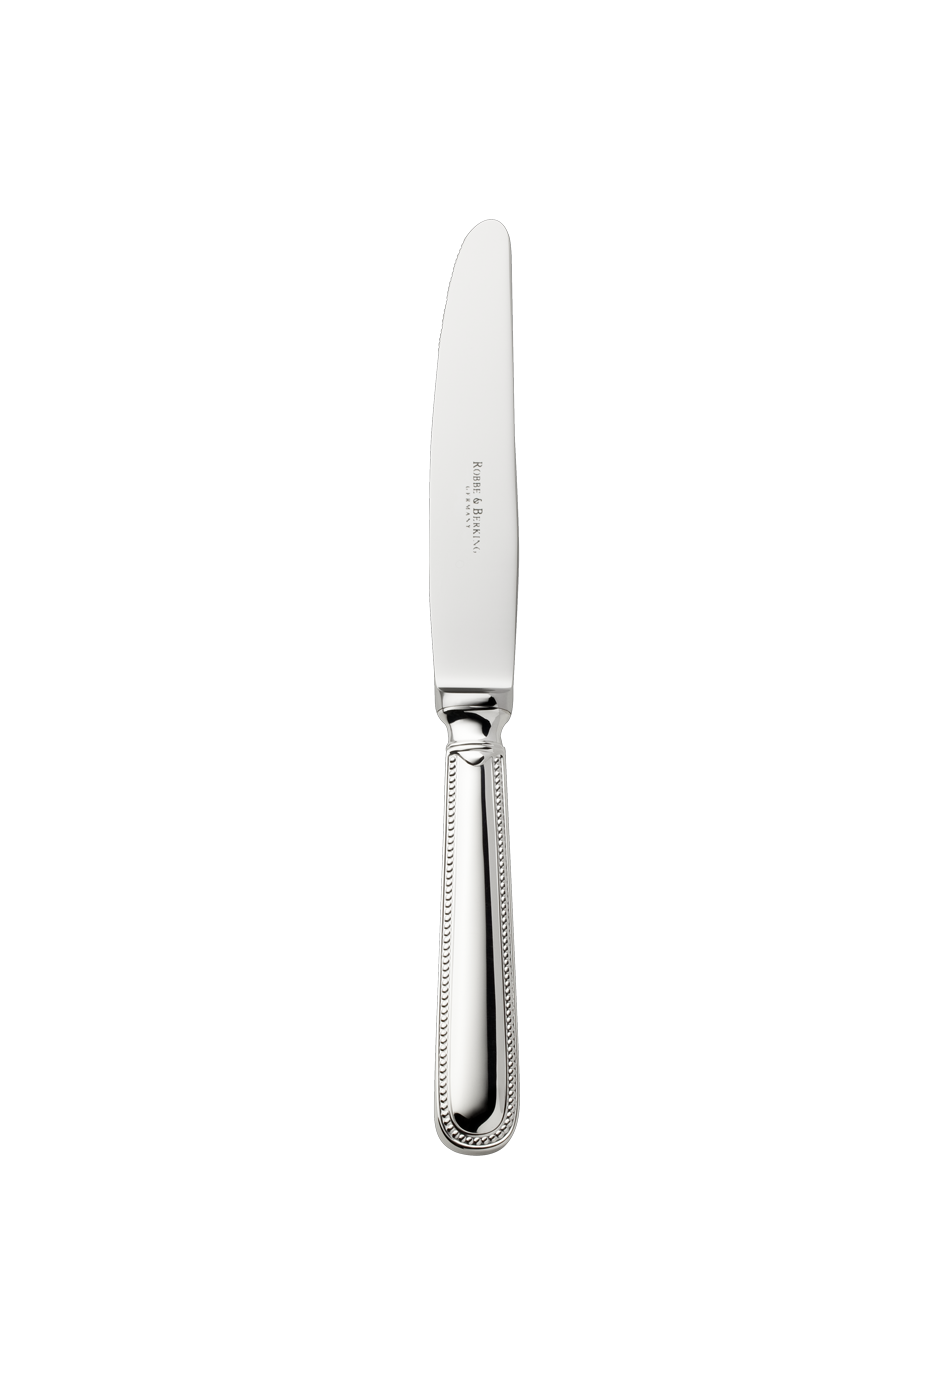 Französisch-Perl Dessert Knife (150g massive silverplated)